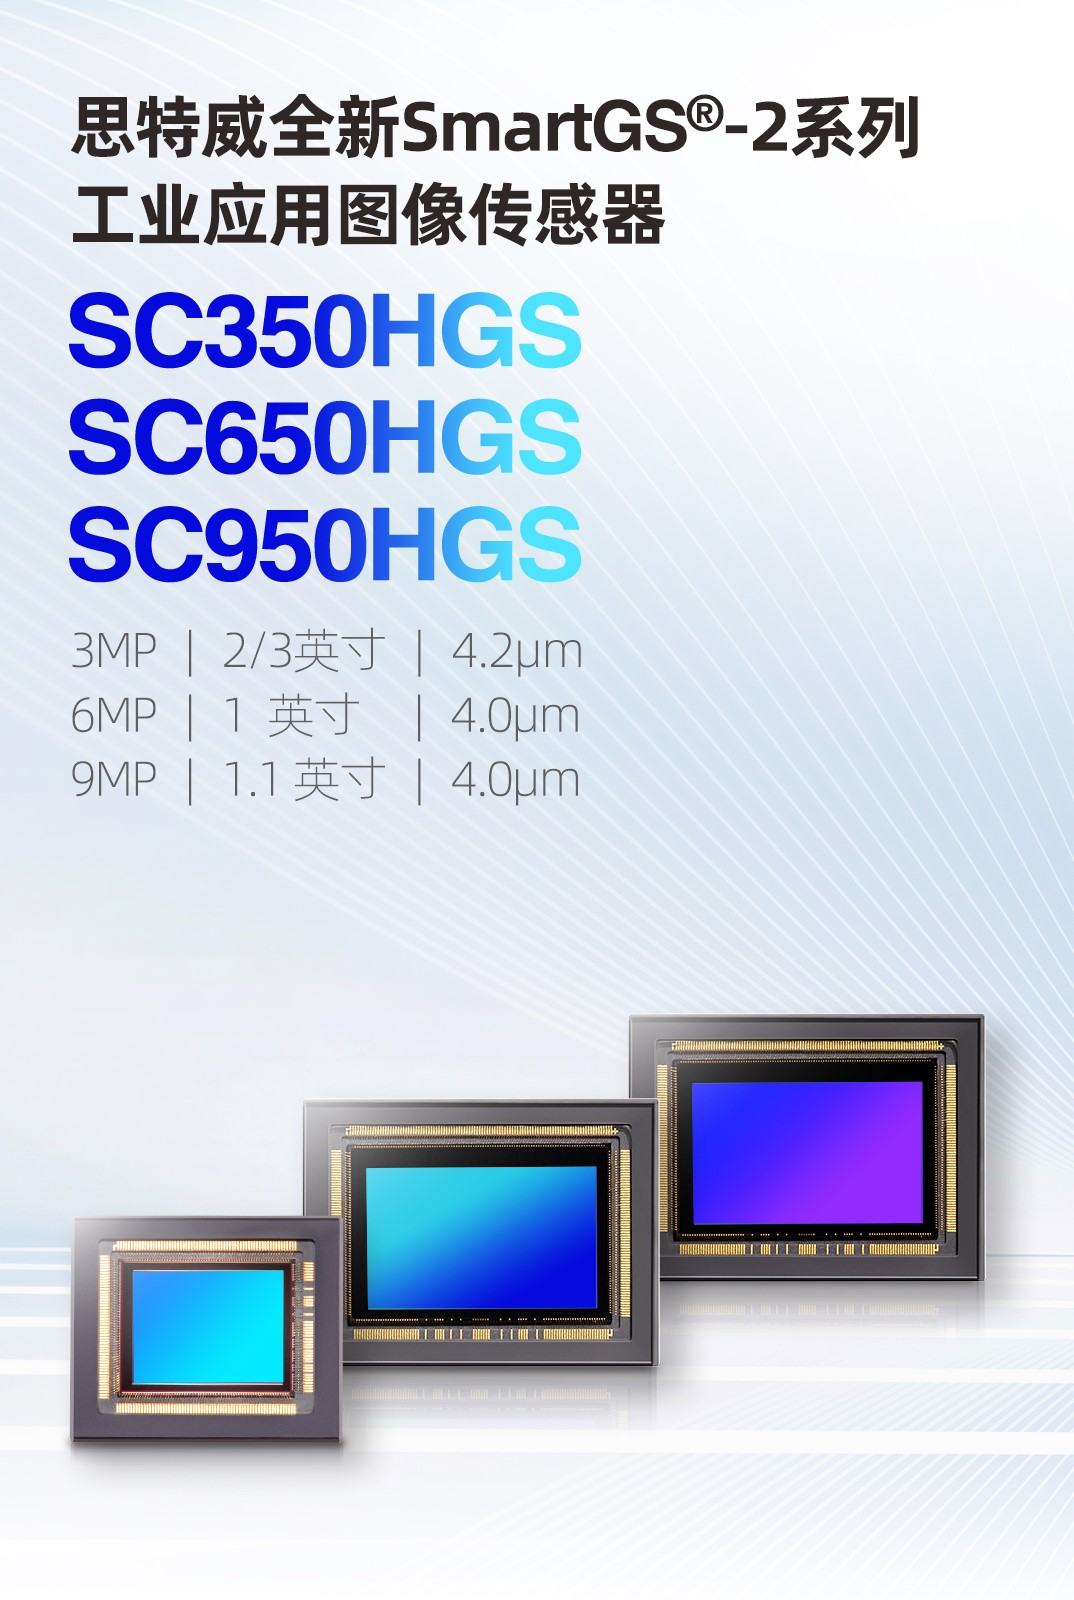 思特威推出三款全新SmartGS-2技術的工業應用CMOS圖像傳感器